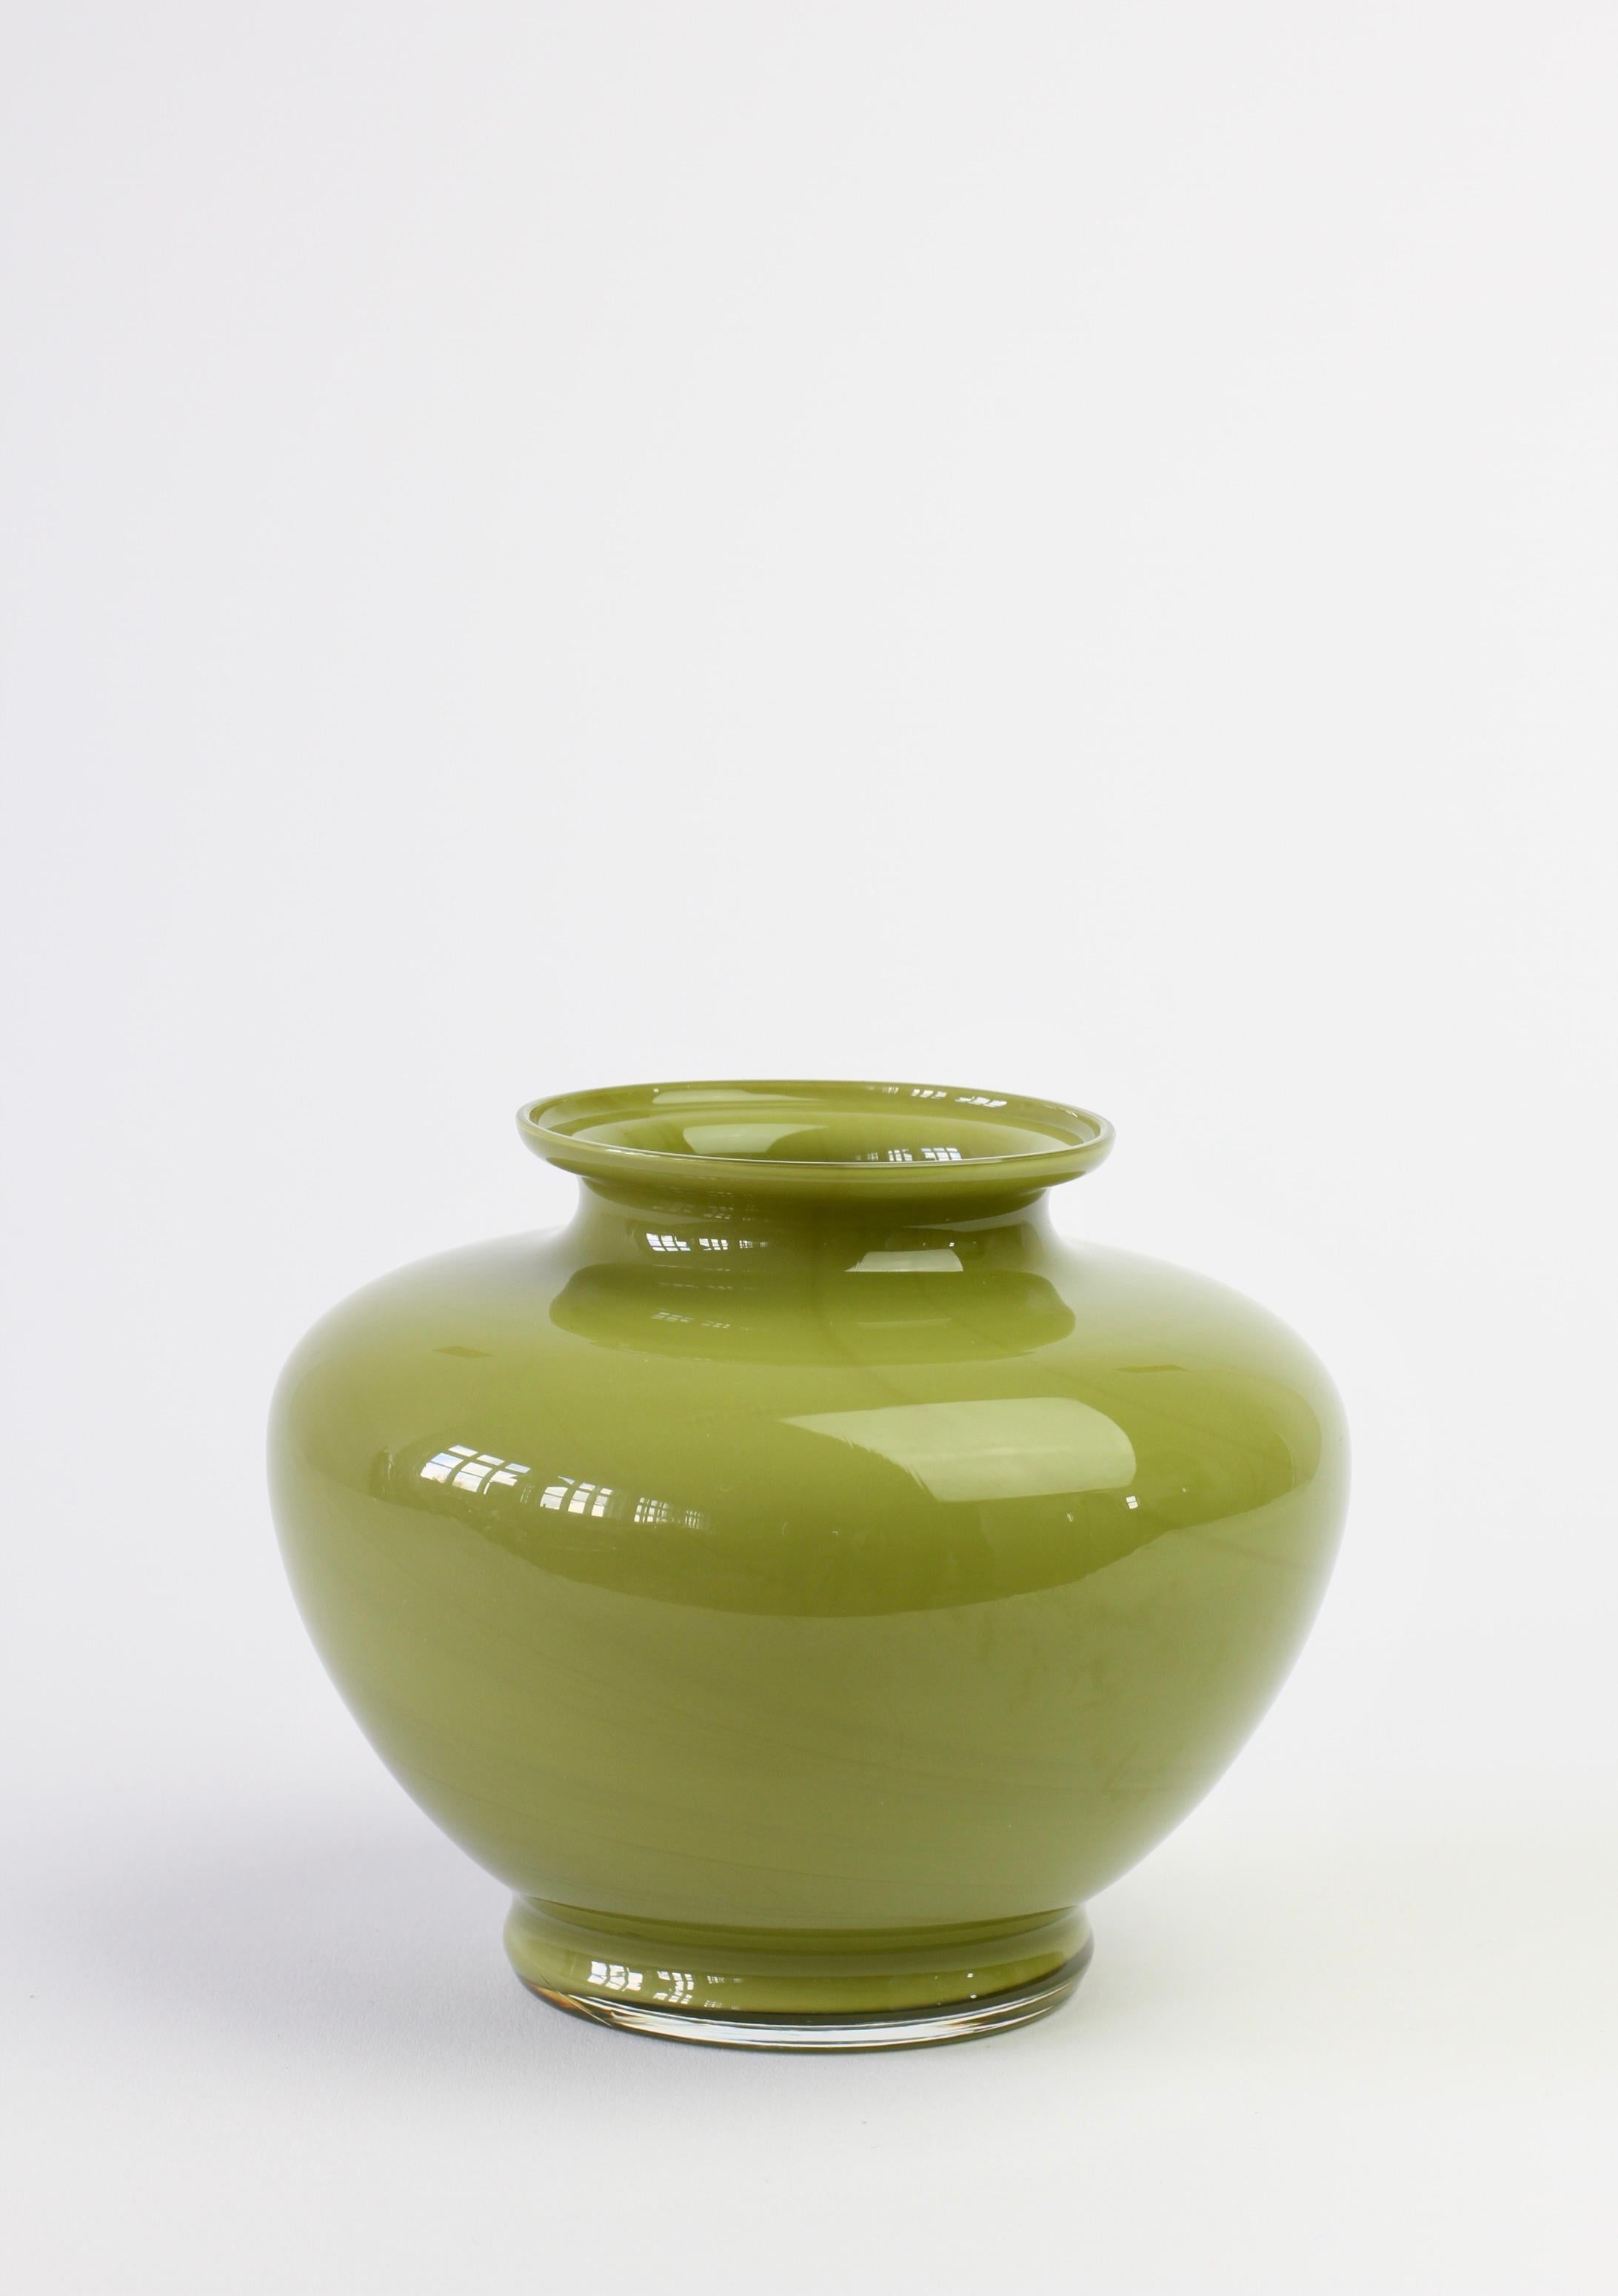 Vase ou récipient en verre de Murano vintage du milieu du siècle dernier, fabriqué en Italie, vers 1970-1990, de couleur vert pomme ou vert mousse. L'élégance de la forme est particulièrement frappante. La pièce a les caractéristiques d'une poterie